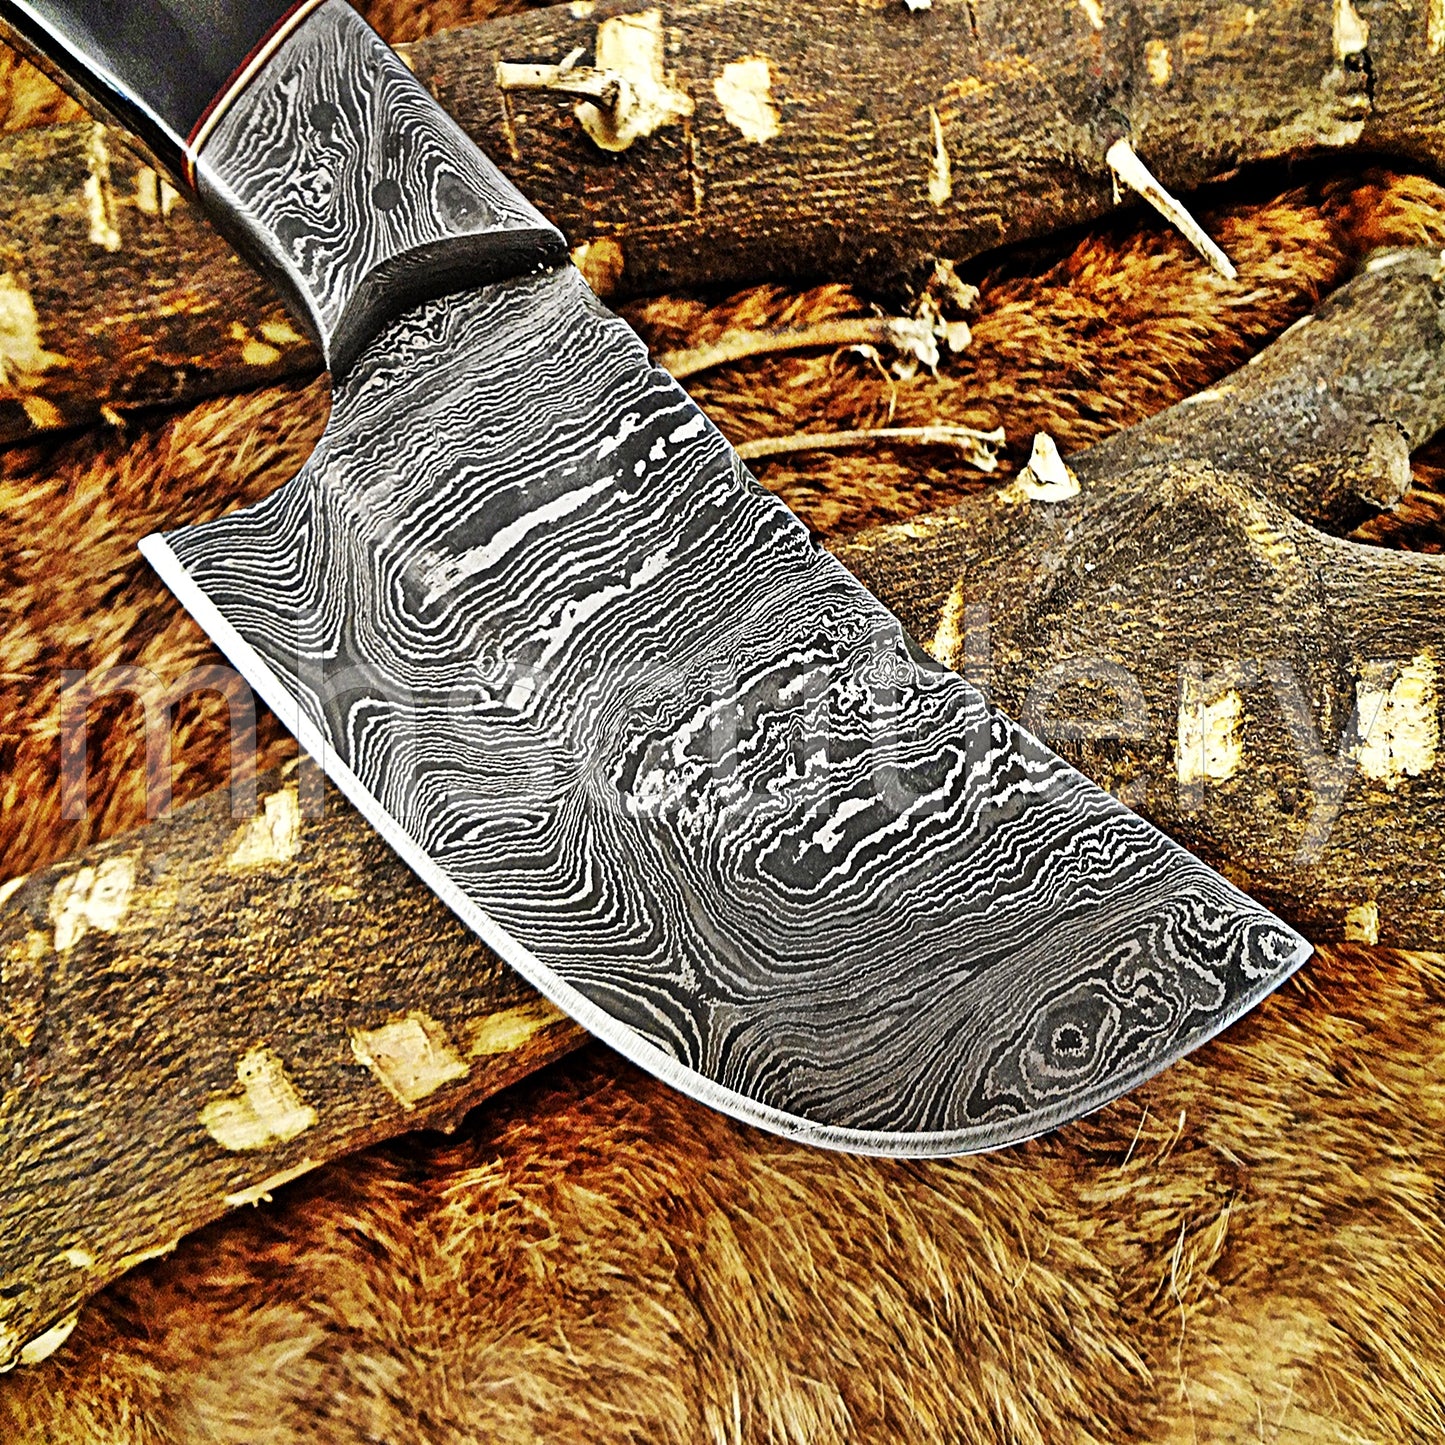 Custom Handmade Damascus Steel Japanese Skinner / Bull Horn | mhscutlery